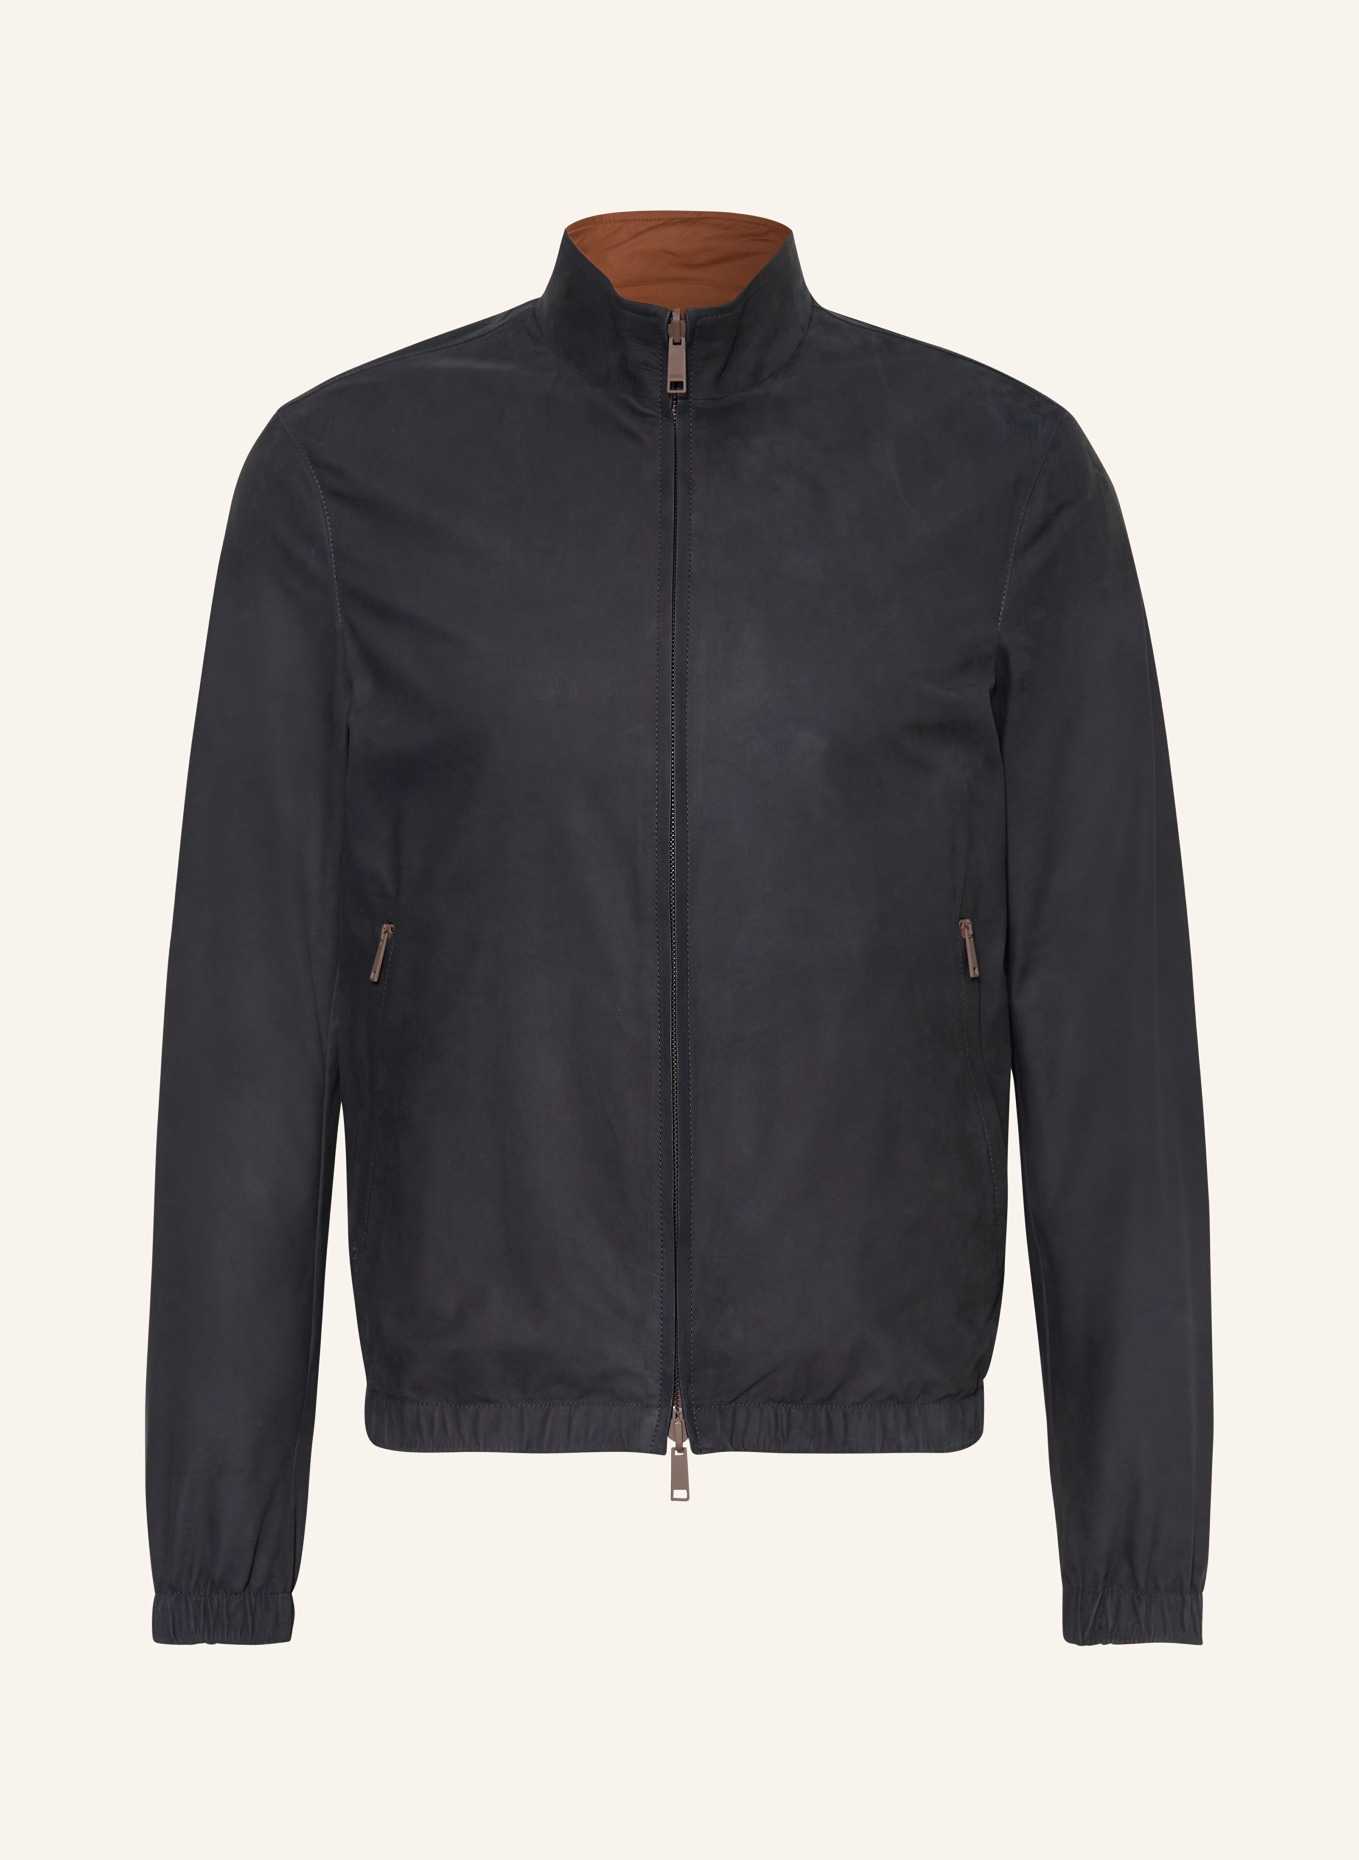 ZEGNA Reversible leather jacket, Color: BLACK/ BROWN (Image 1)